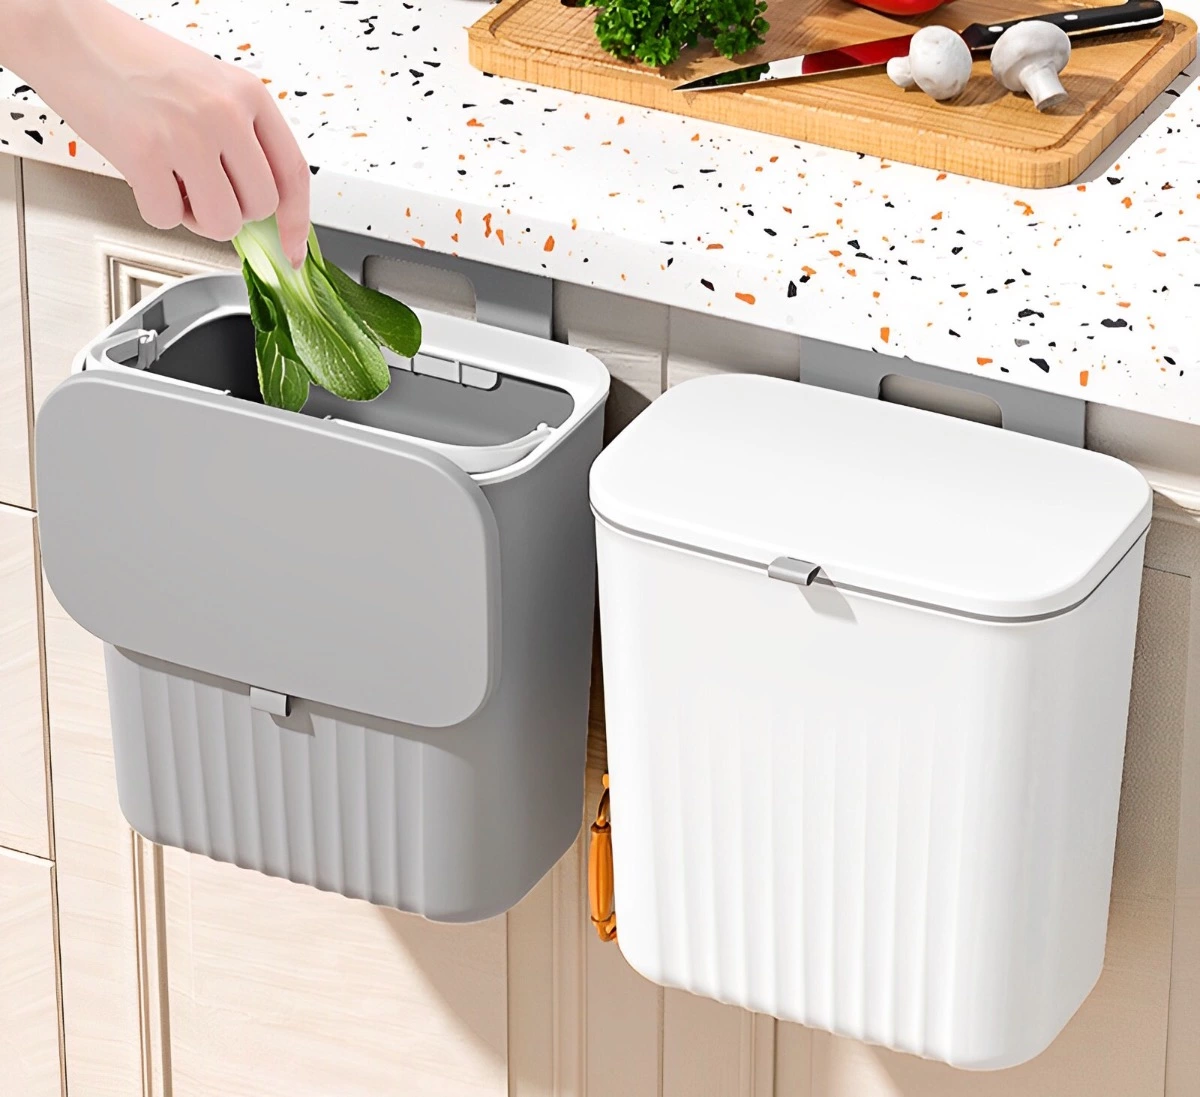 deux poubelles a couvercles une blanche a droite et une grise a gauche accrochees au meuble de cuisine